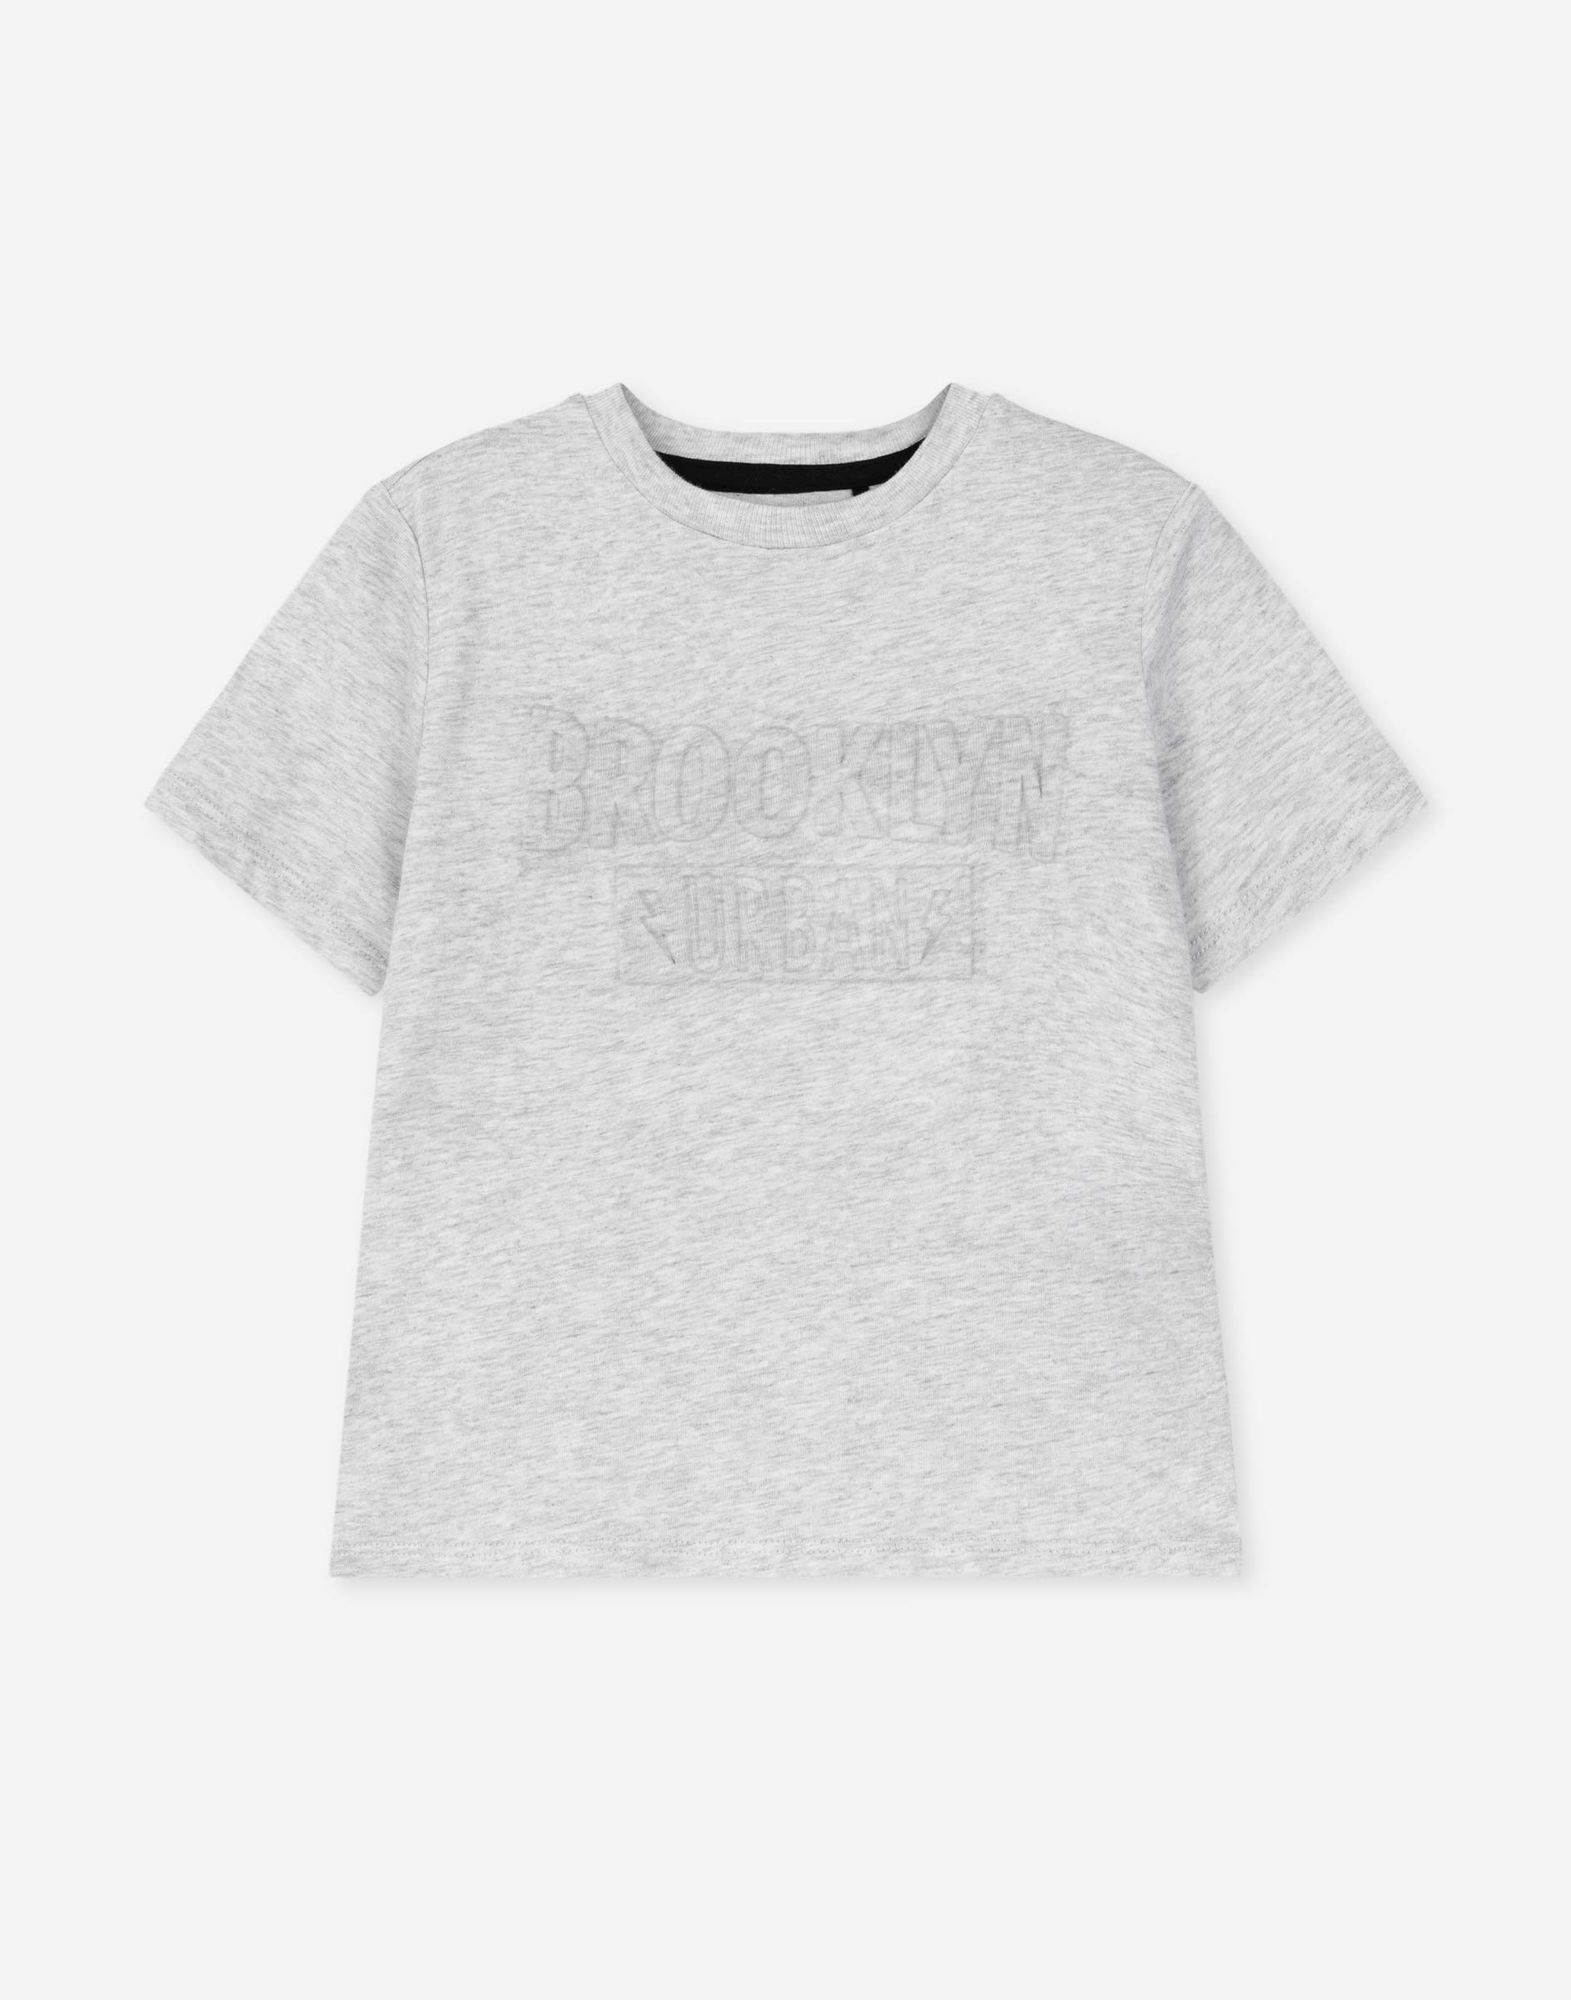 Серая меланжевая футболка с объемной надписью для мальчика-0